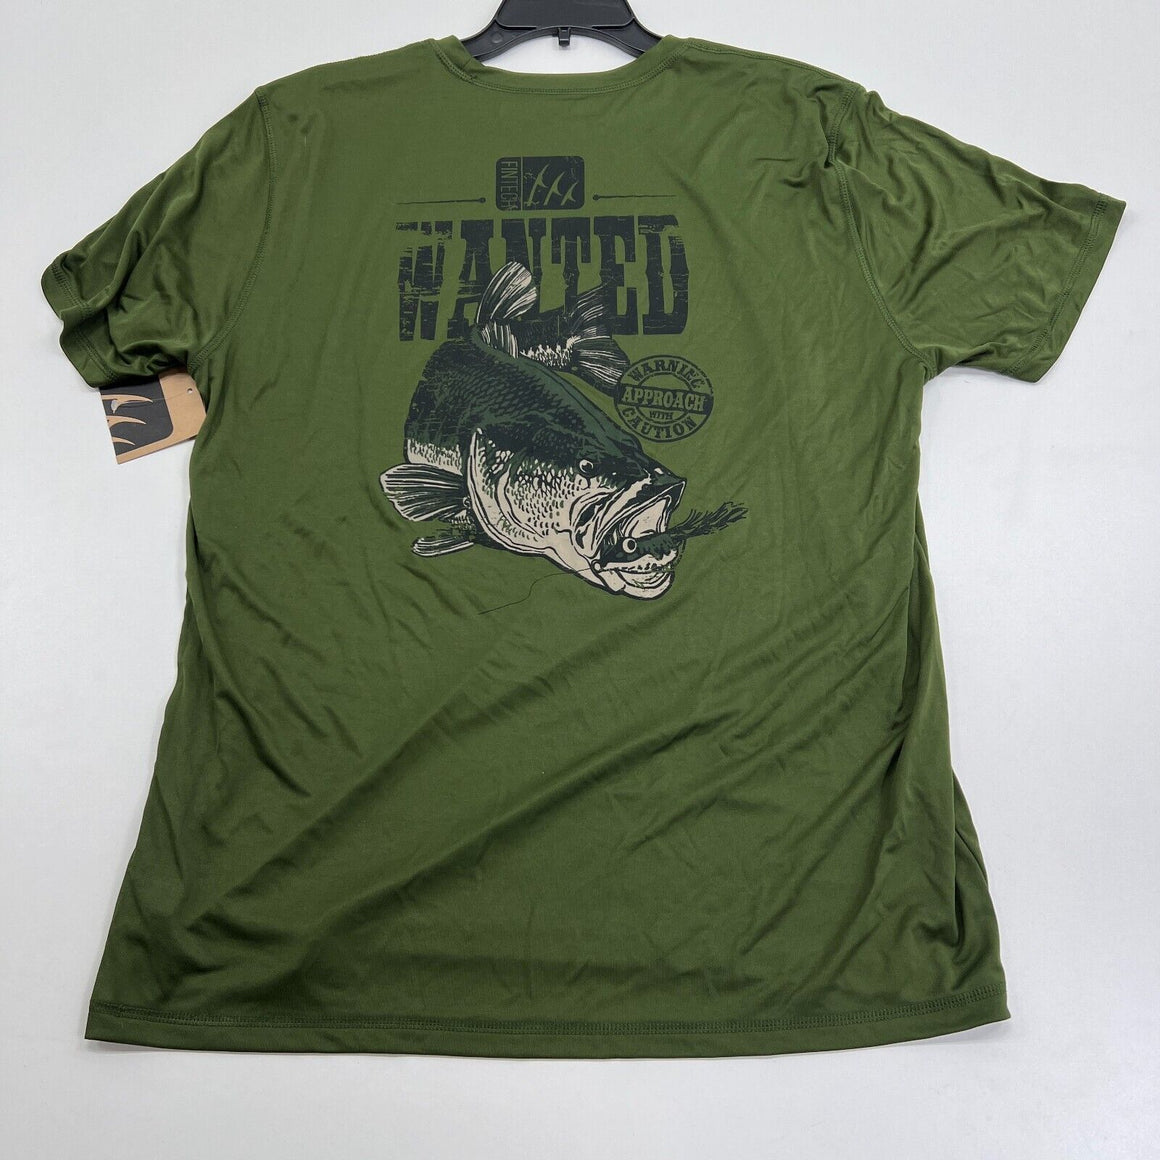 Fintech Green T-Shirt Bass Fishing Outdoor Sun Defender UV UPF 50+